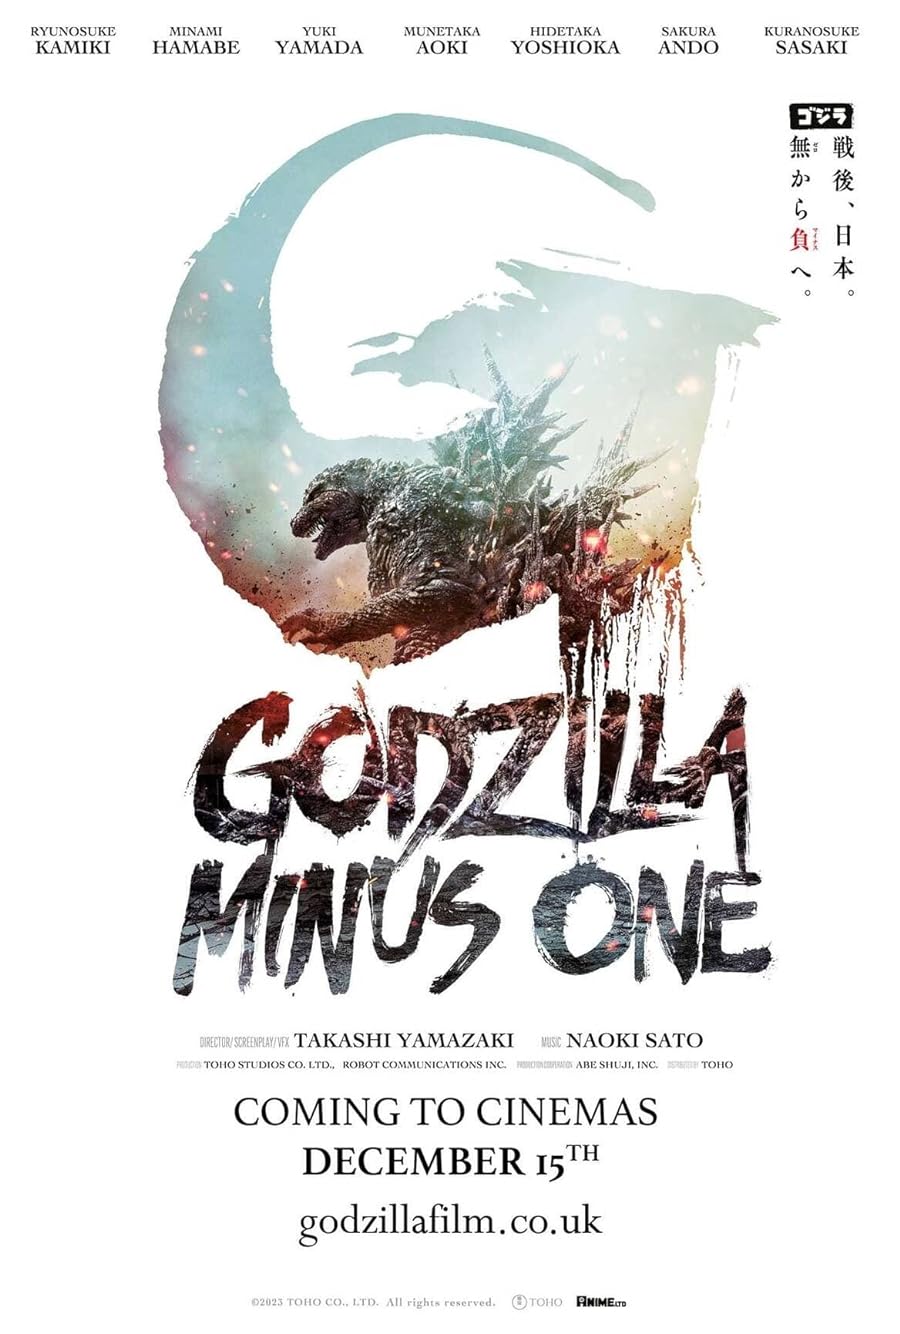 فیلم Godzilla Minus One 2023 گودزیلا منهای یک [ دانلود و تماشای آنلاین ] رایگان